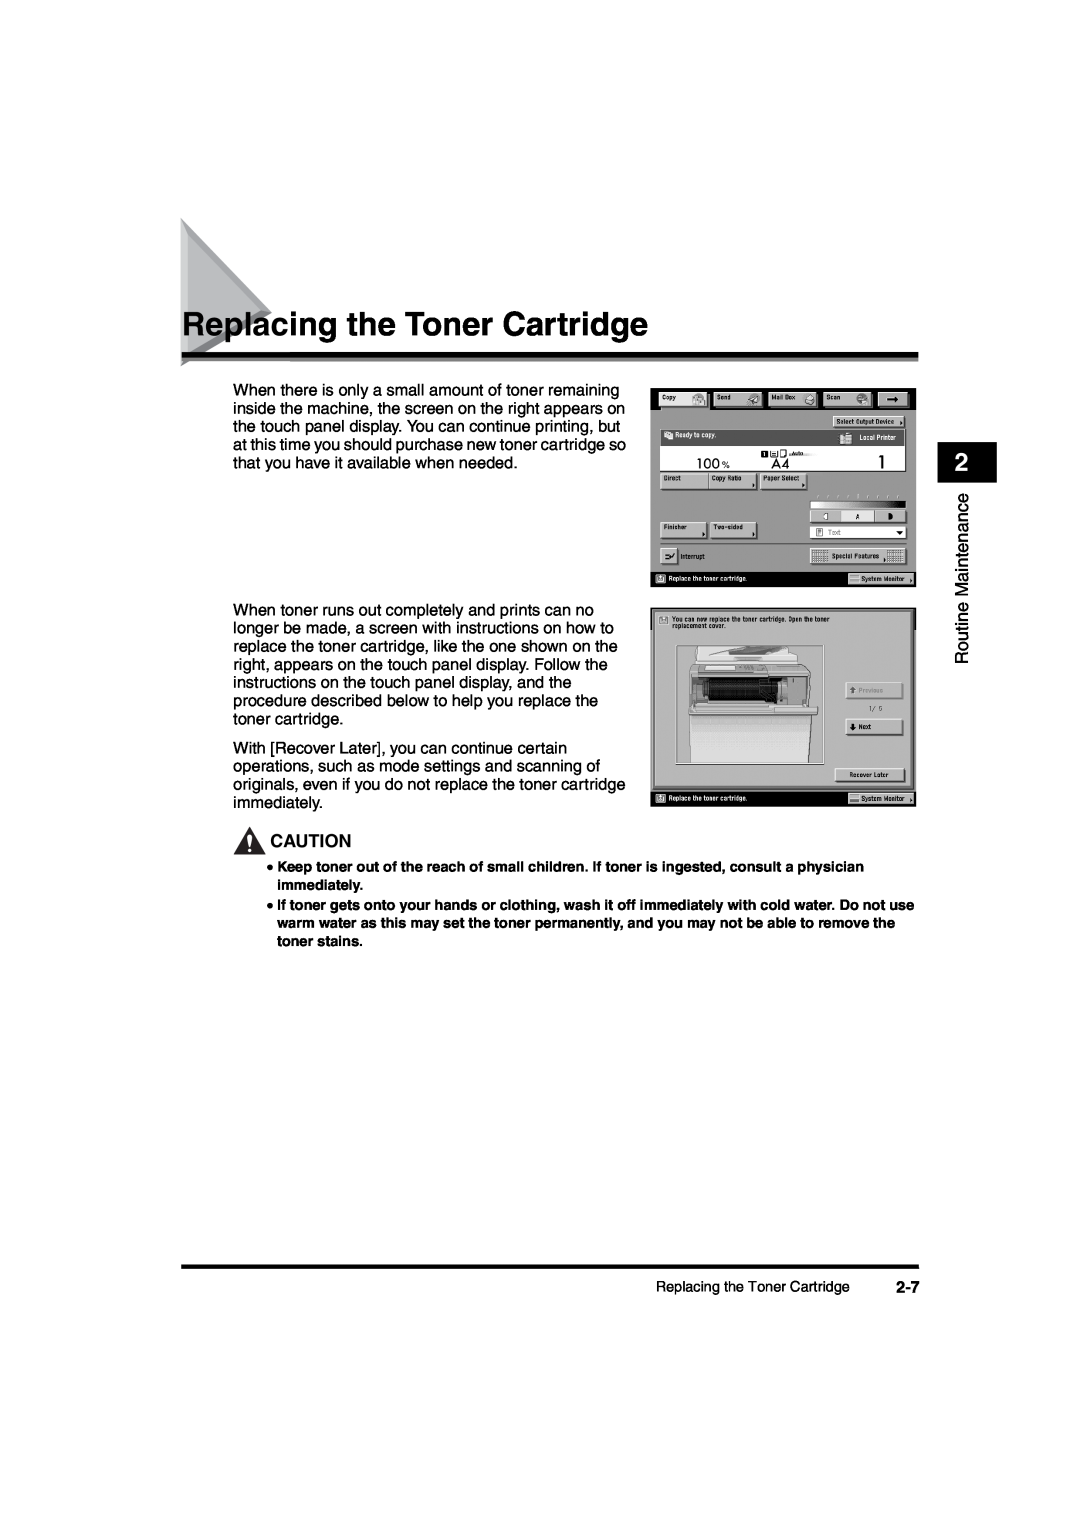 Canon iR6570 manual Replacing the Toner Cartridge 